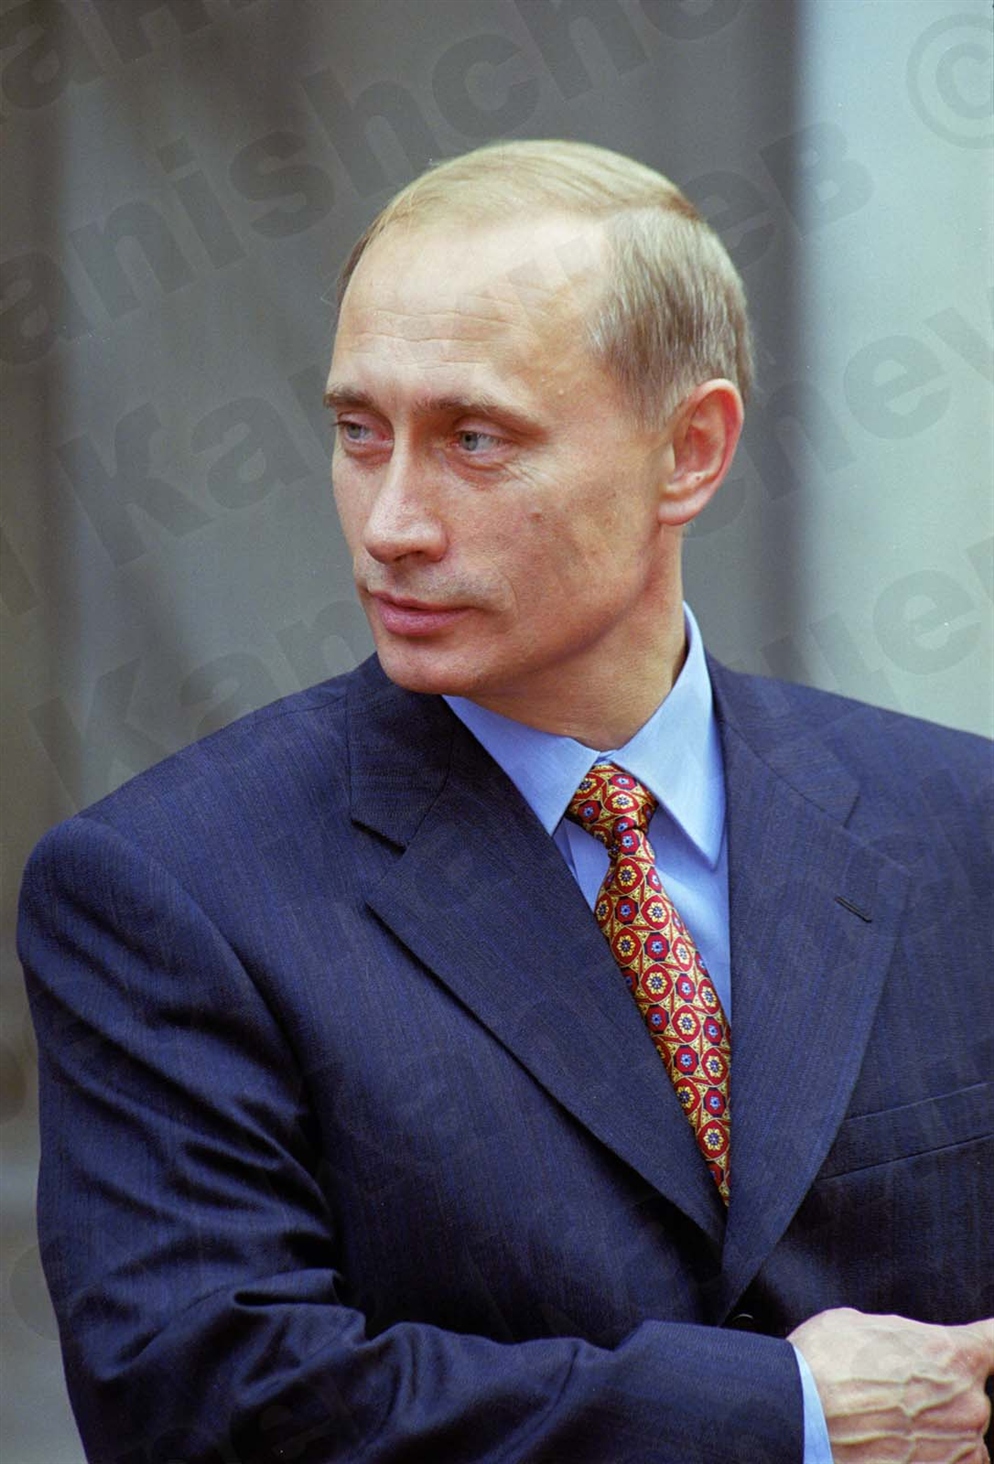 Путин на зеленом фоне в полный рост